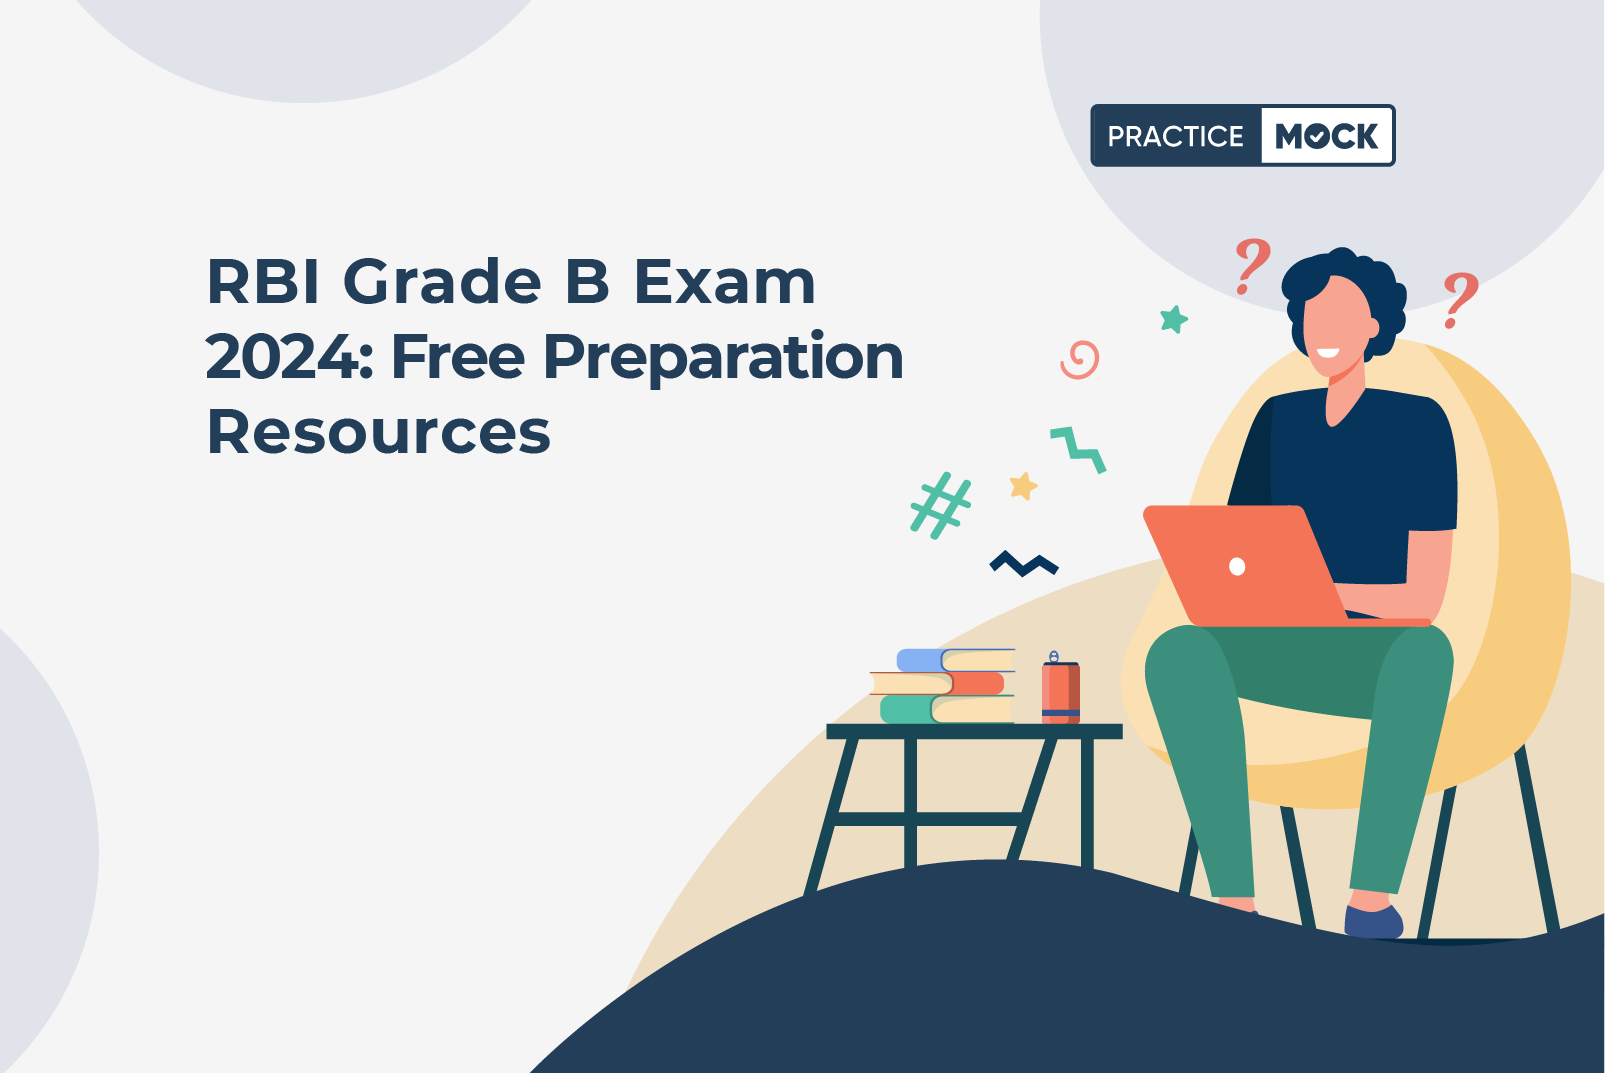 RBI Grade B Exam 2024 Free Preparation Resources